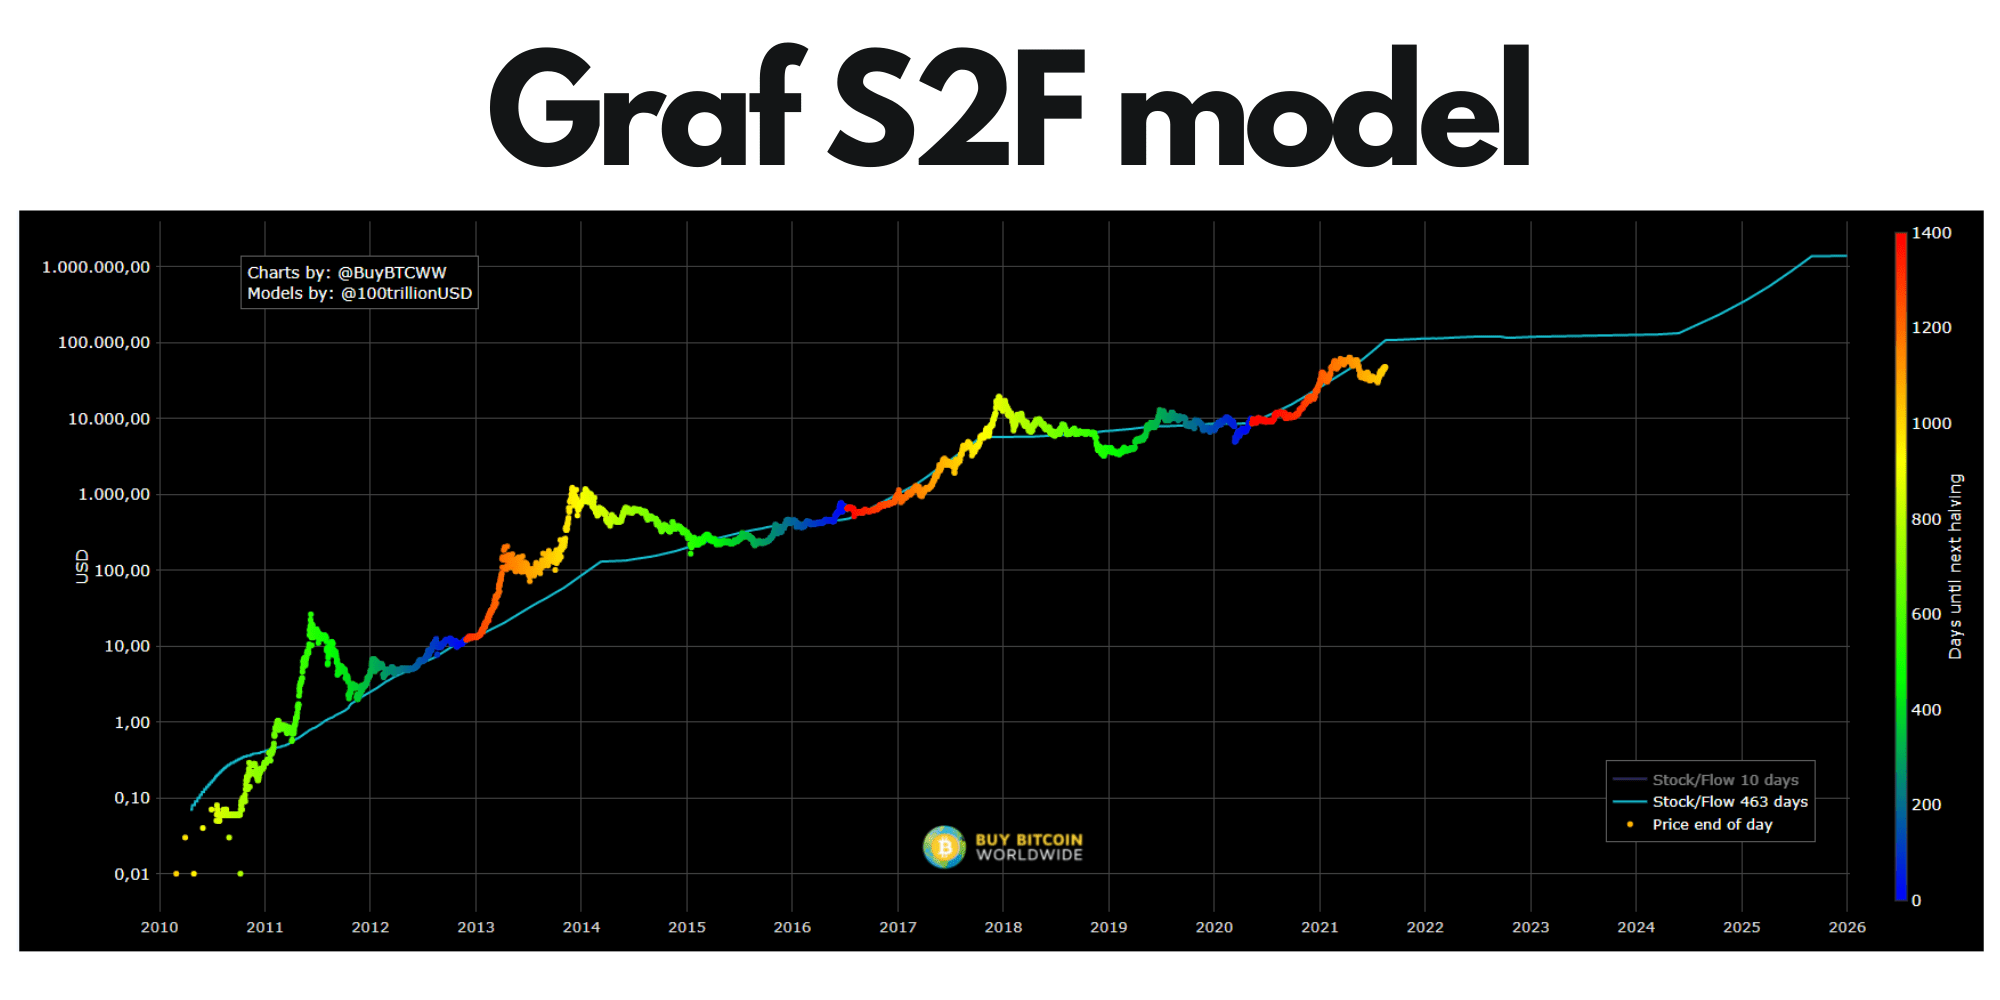 Graf S2F model